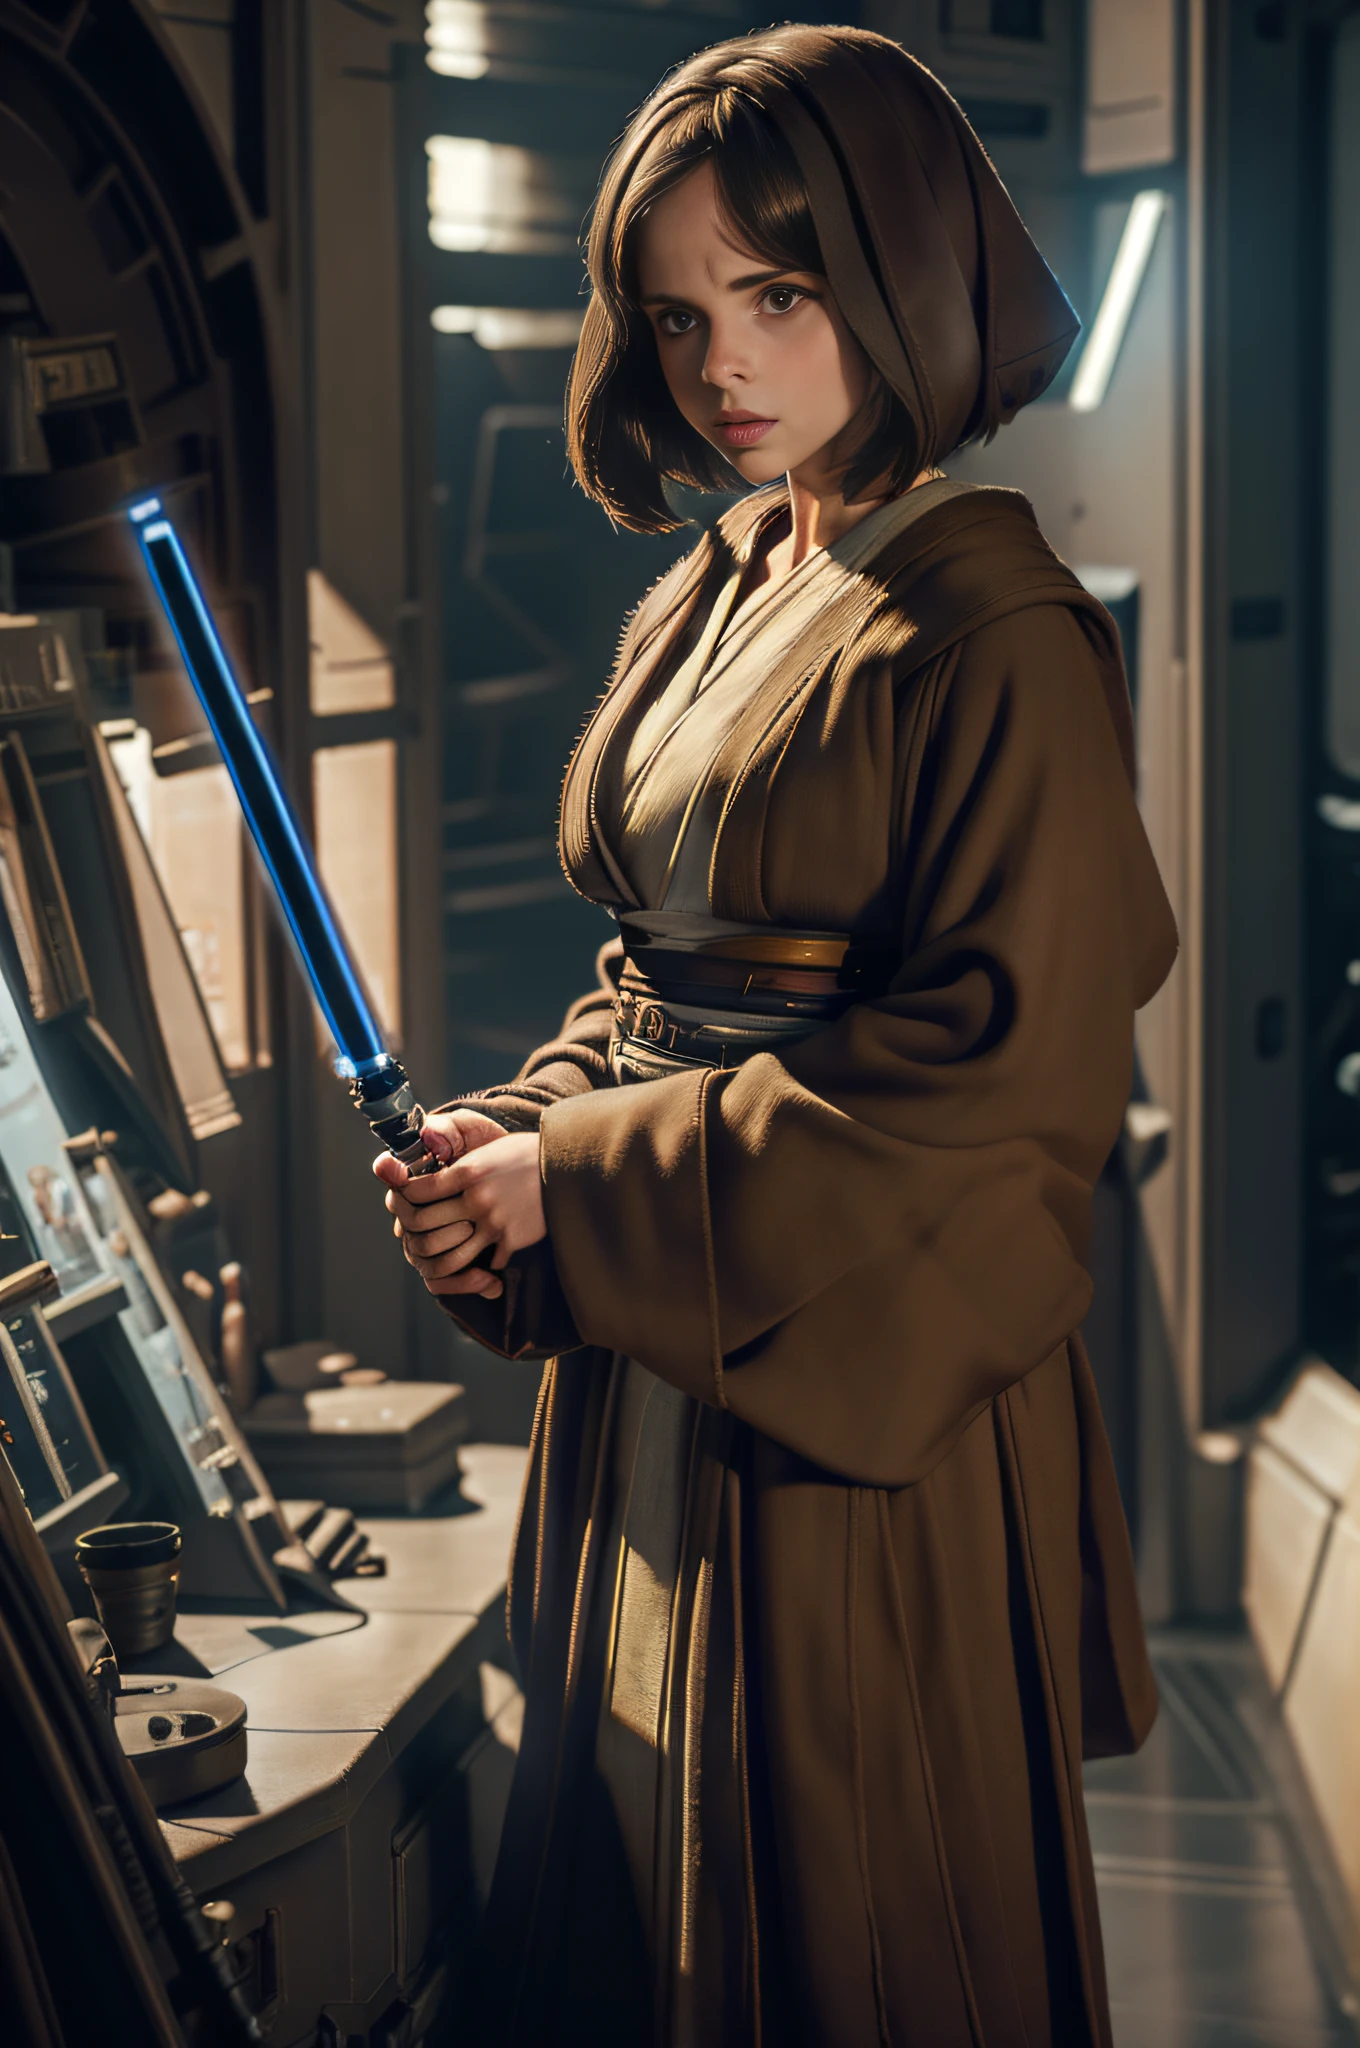 Portrait détaillé de Felicity Jones en Jedi, avec un sabre laser, tout le corps, Greg Rutkowski, stations artistiques, fantaisie, style réaliste